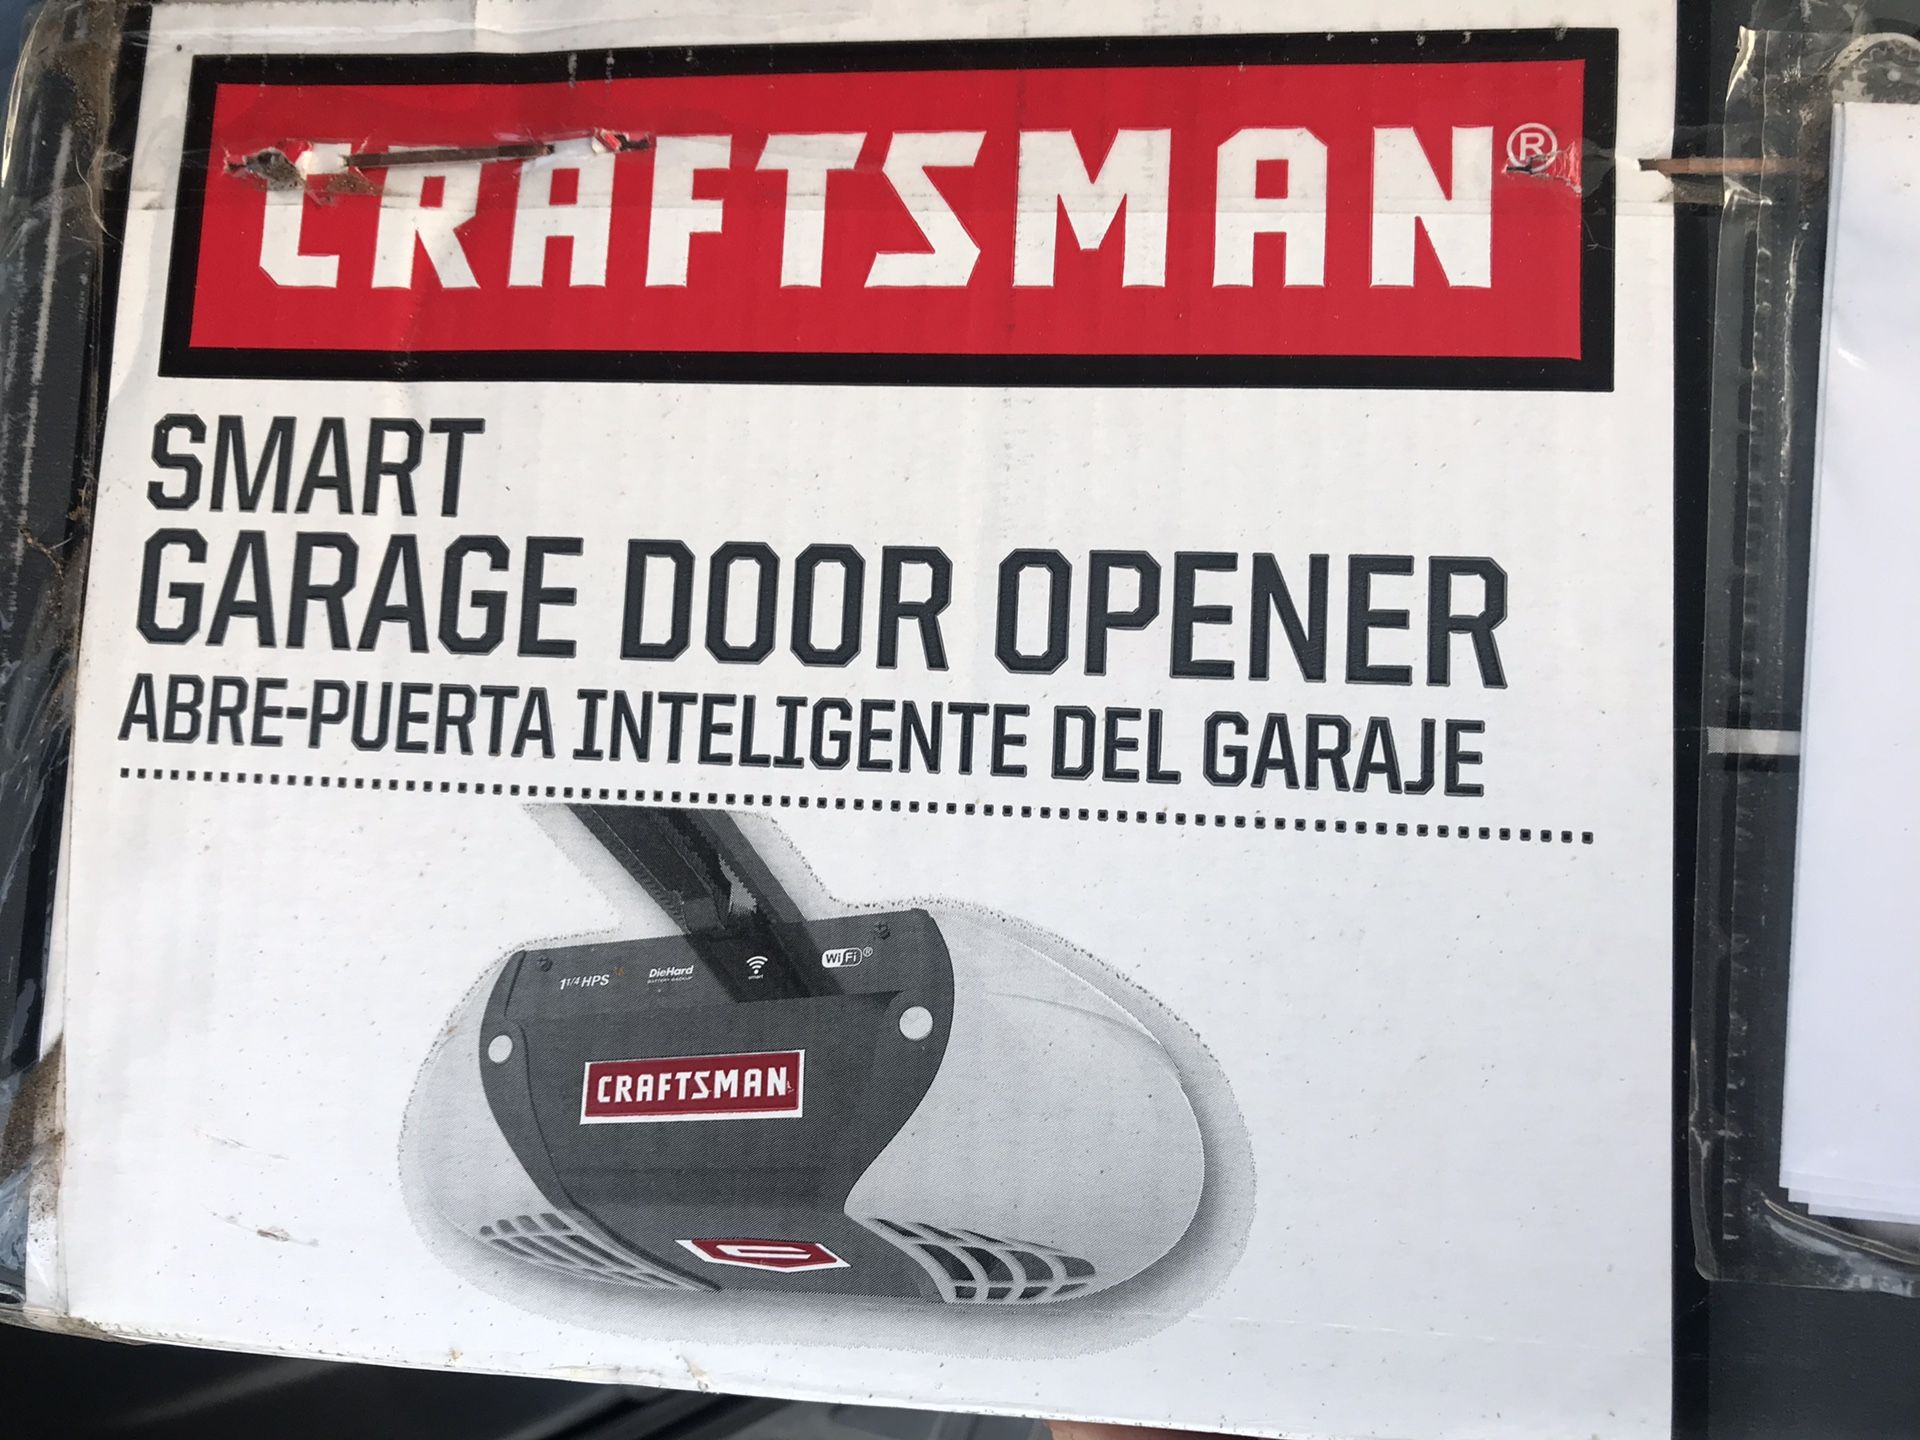 Brand New - Craftsman Smart Garage Door Opener w/ WiFi and Battery Backup - Model 54931